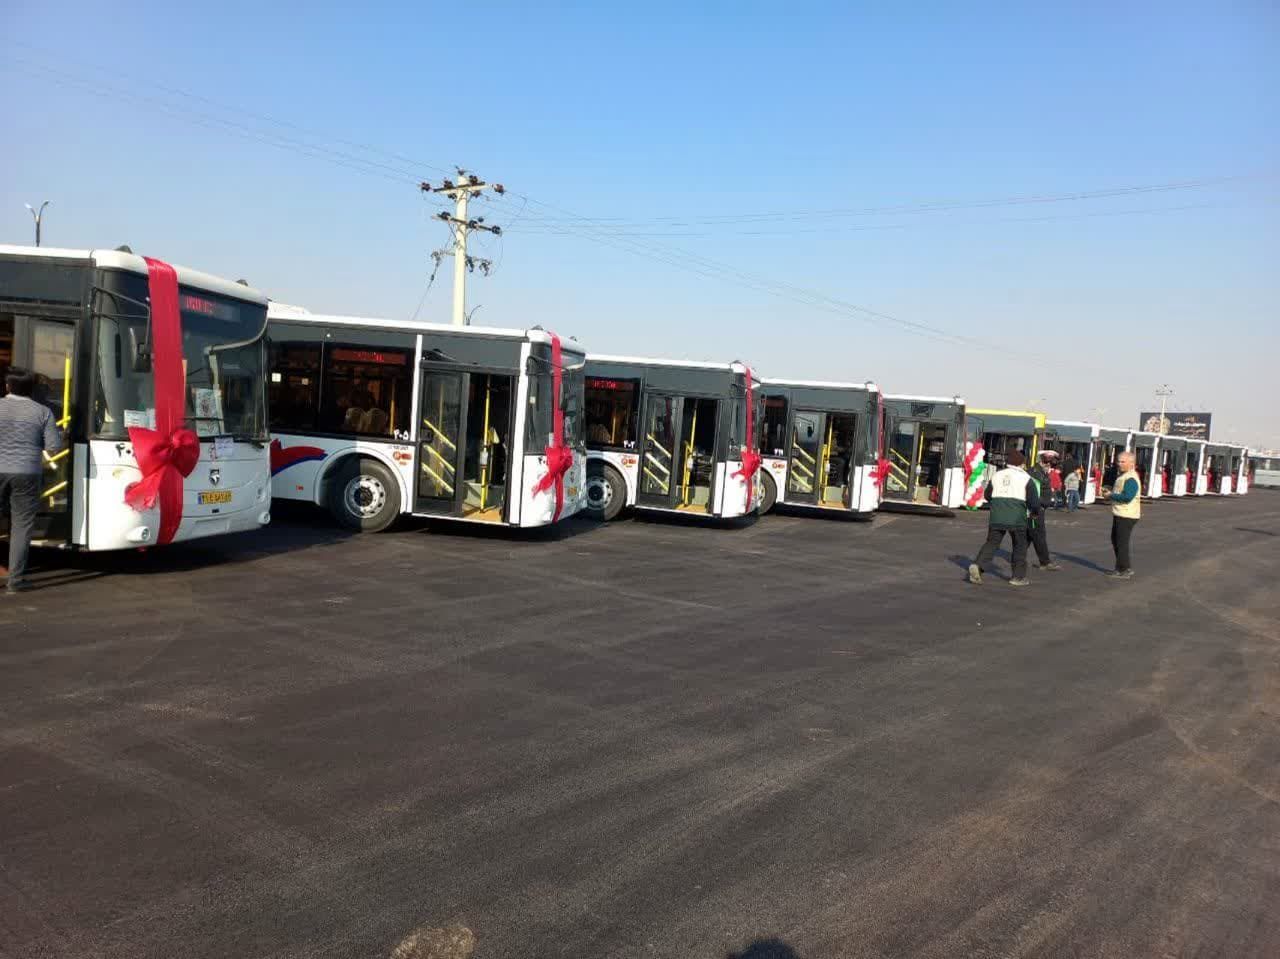 دمیدن روح تازه در کالبد  فرسوده حمل و نقل عمومی شهری / رونمایی ۱۴ دستگاه اتوبوس از ۷۷ خودرو جدید در کاشان